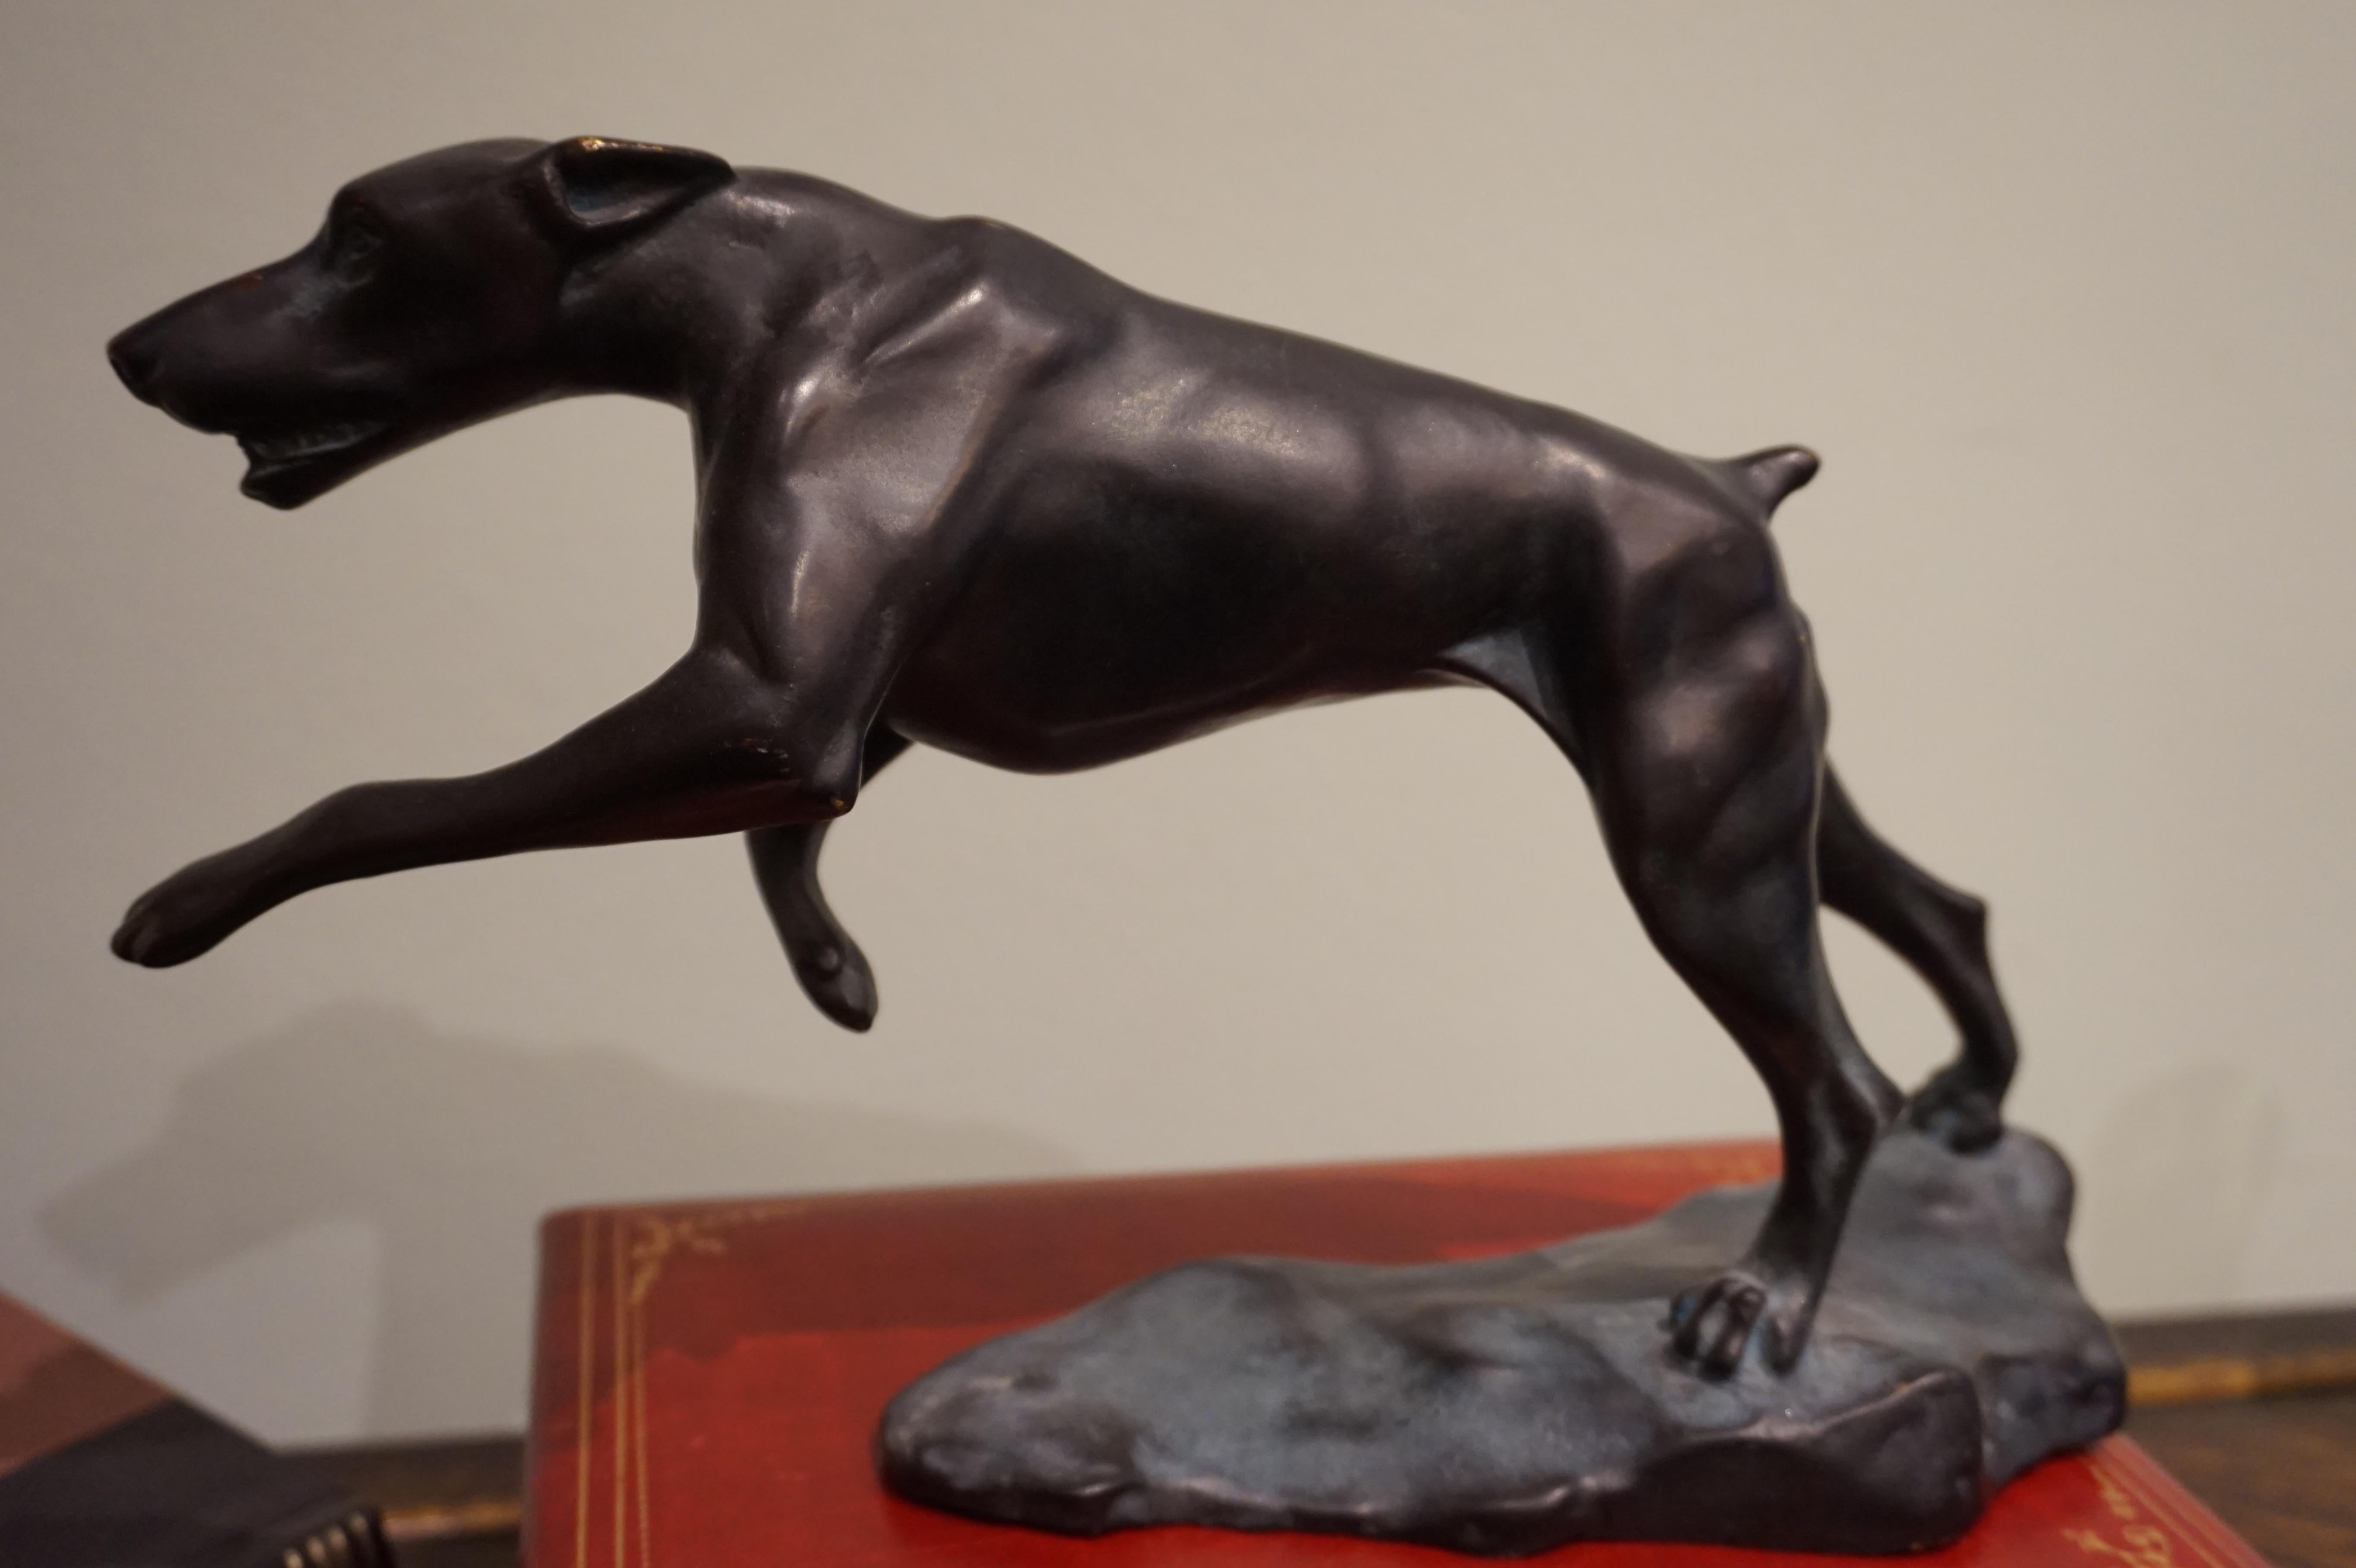 Bronze Art Deco springender Hund auf Ständer.
Eine elegante Form, die Ton und Sehnen zum Ausdruck bringt, die im Laufe der Zeit patiniert wurden,
CIRCA 1930er Jahre schön im Schritt abgebildet. Er hat eine gute Größe und eine enorme Gravita.